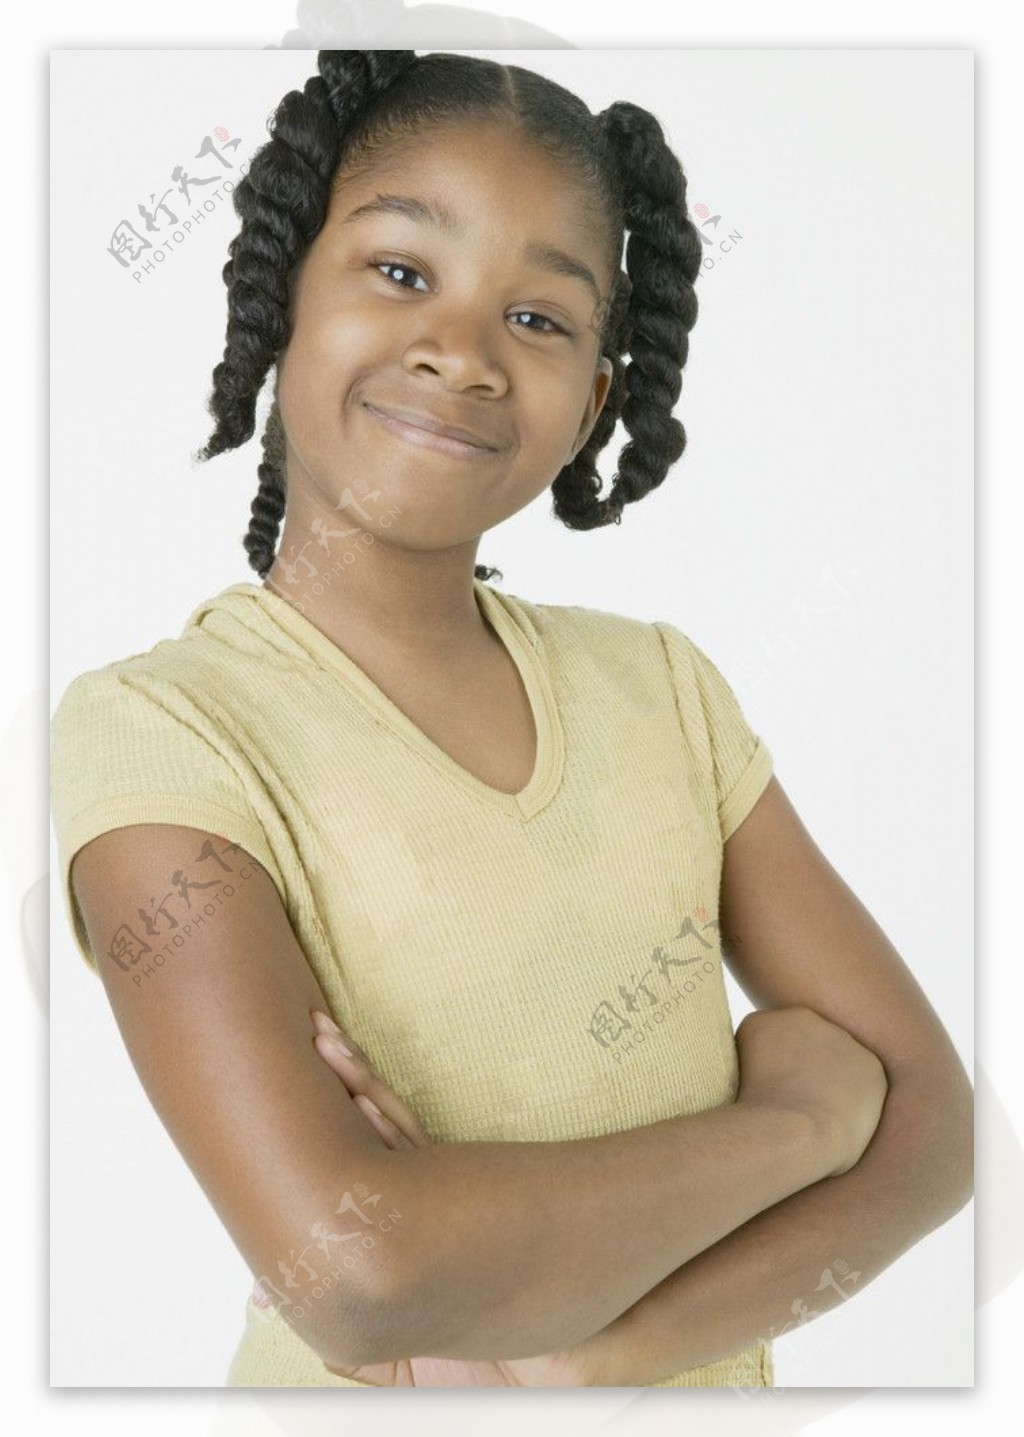 可爱的黑人女孩 库存图片. 图片 包括有 表面, 相当, 女孩, 户外, 有吸引力的, 室外, 破擦声, 外面 - 5444837